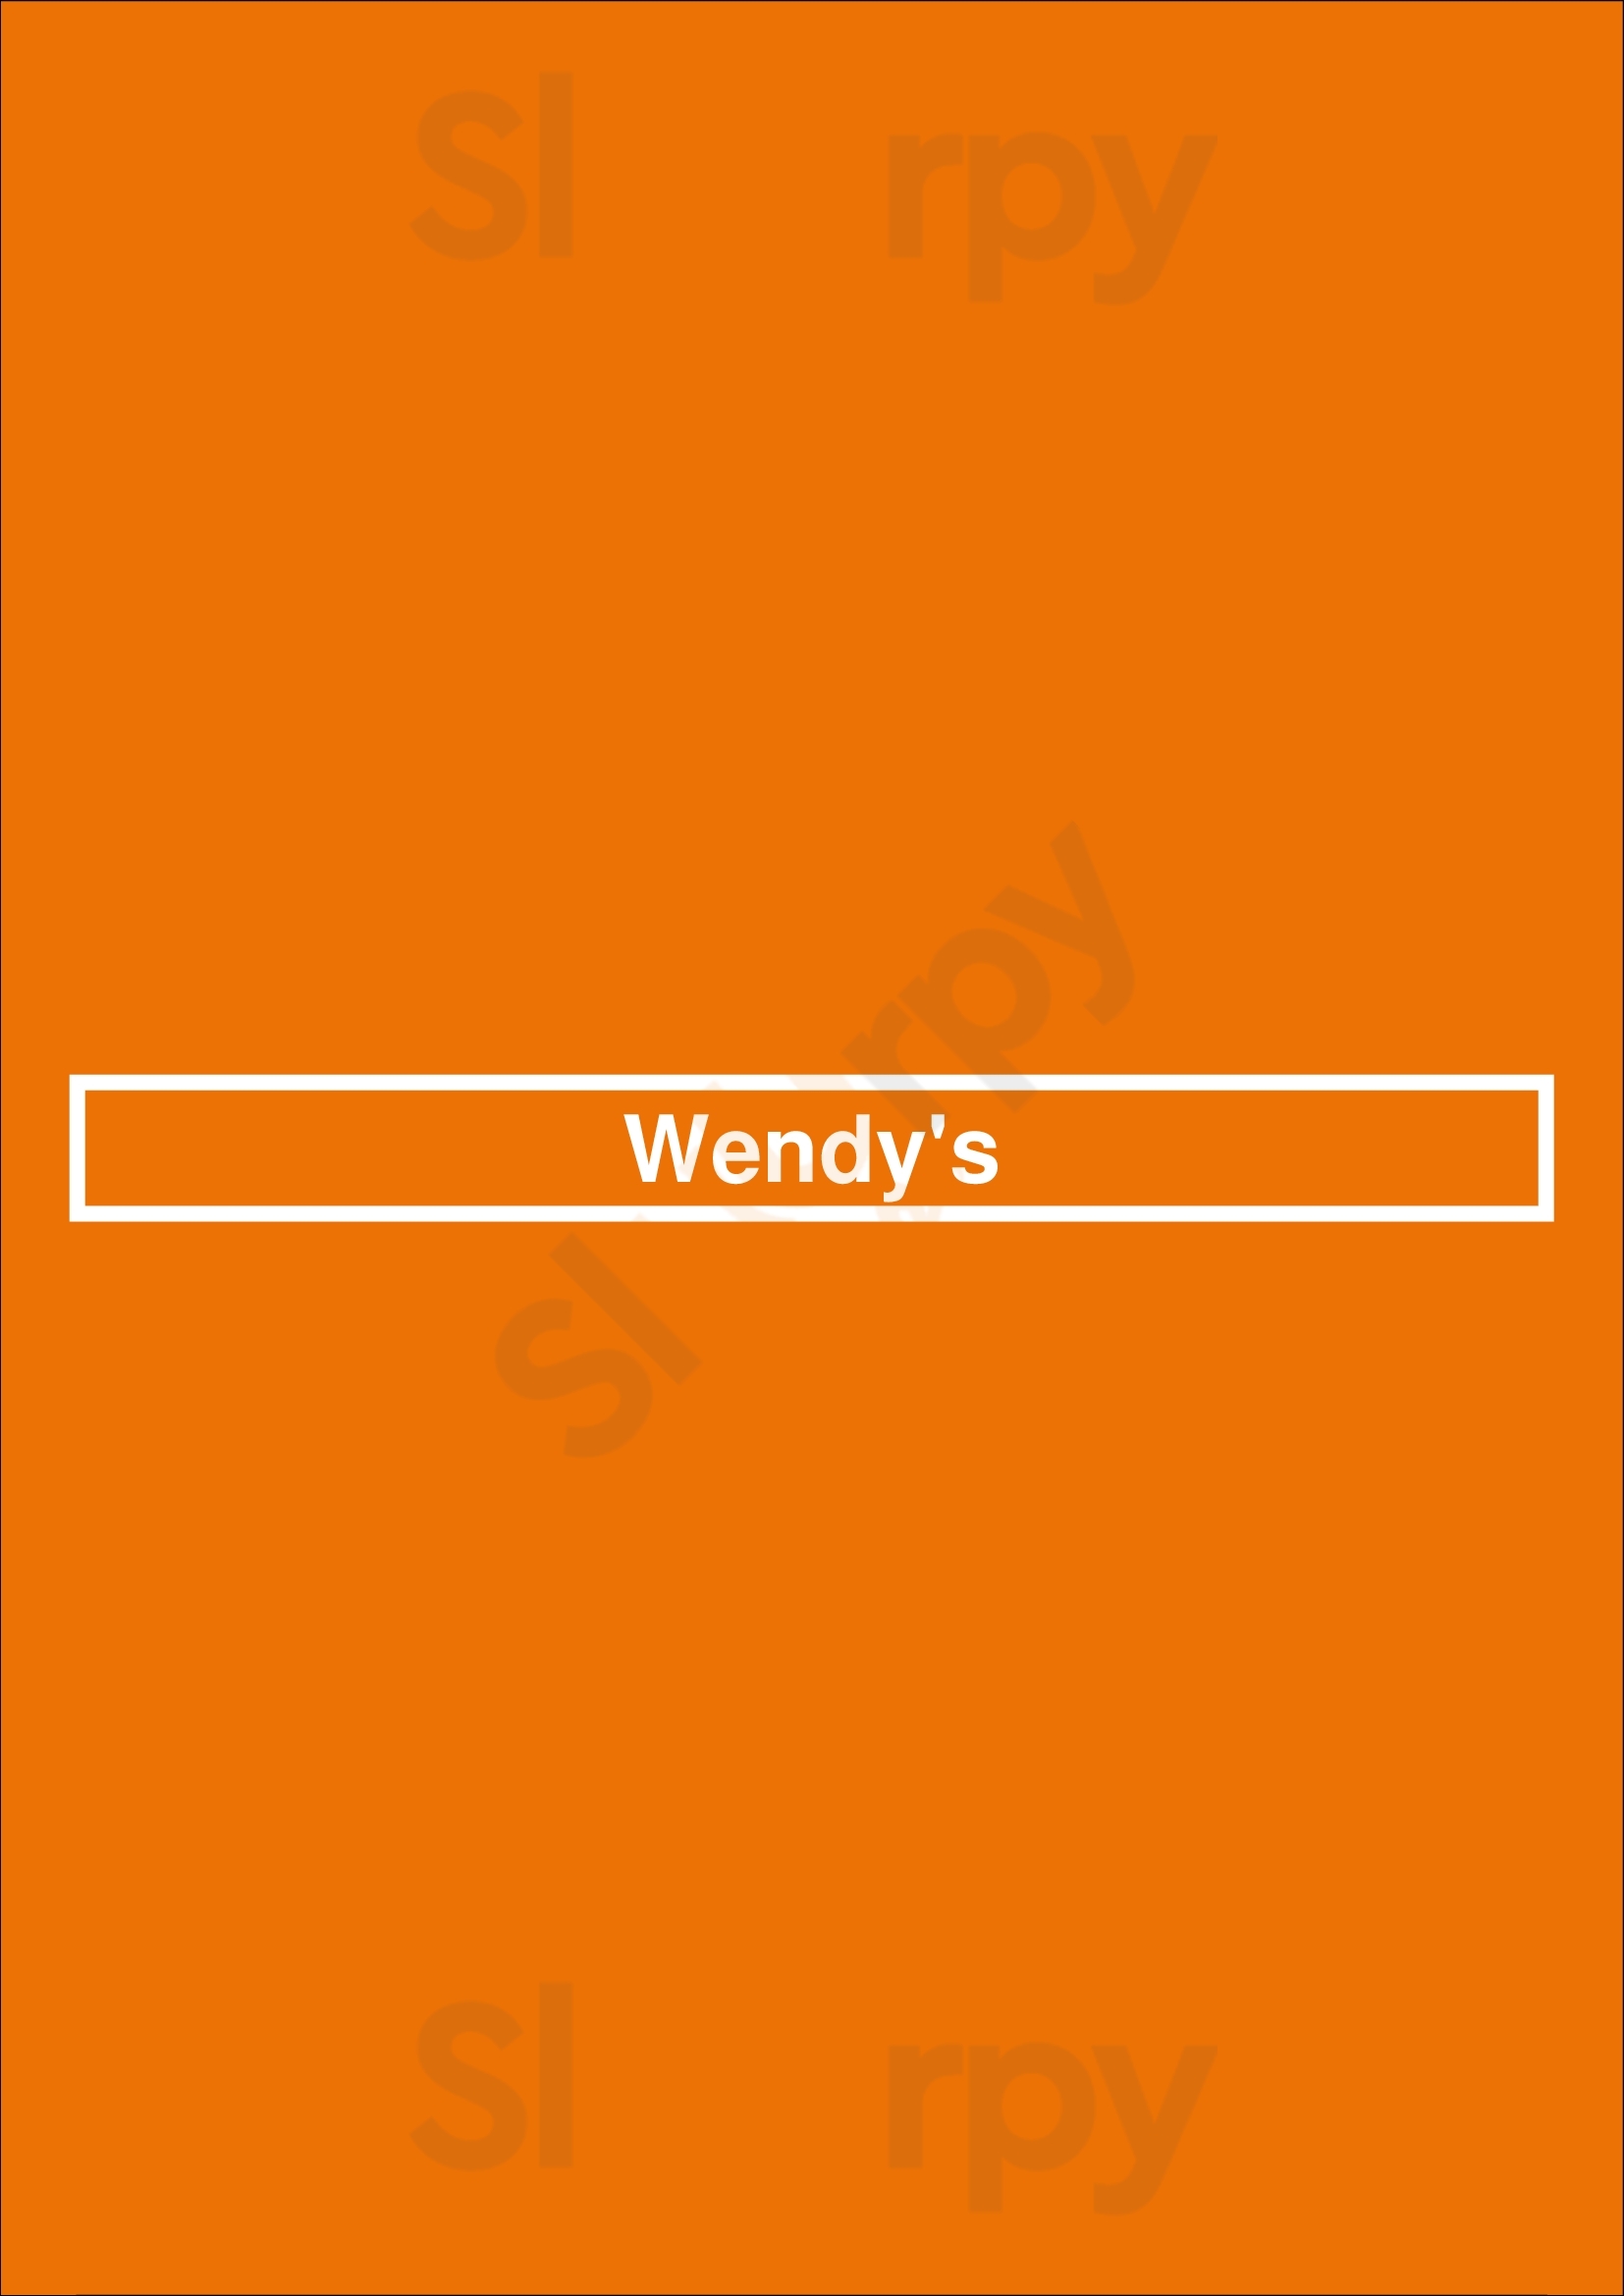 Wendy's Mobile Menu - 1